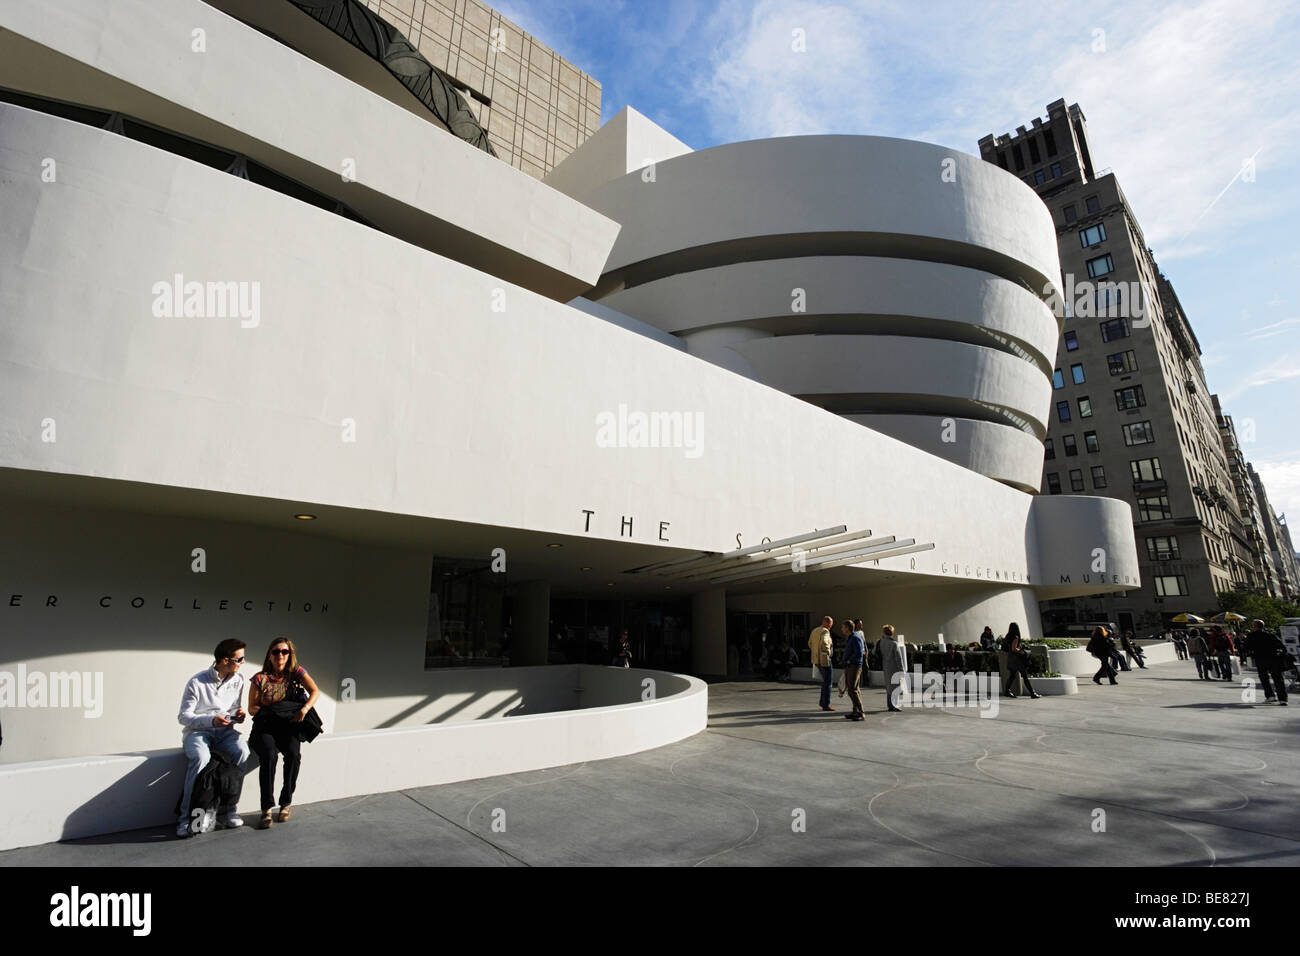 The Solomon R. Guggenheim Museum, Manhattan, New York City, New York, USA Stock Photo